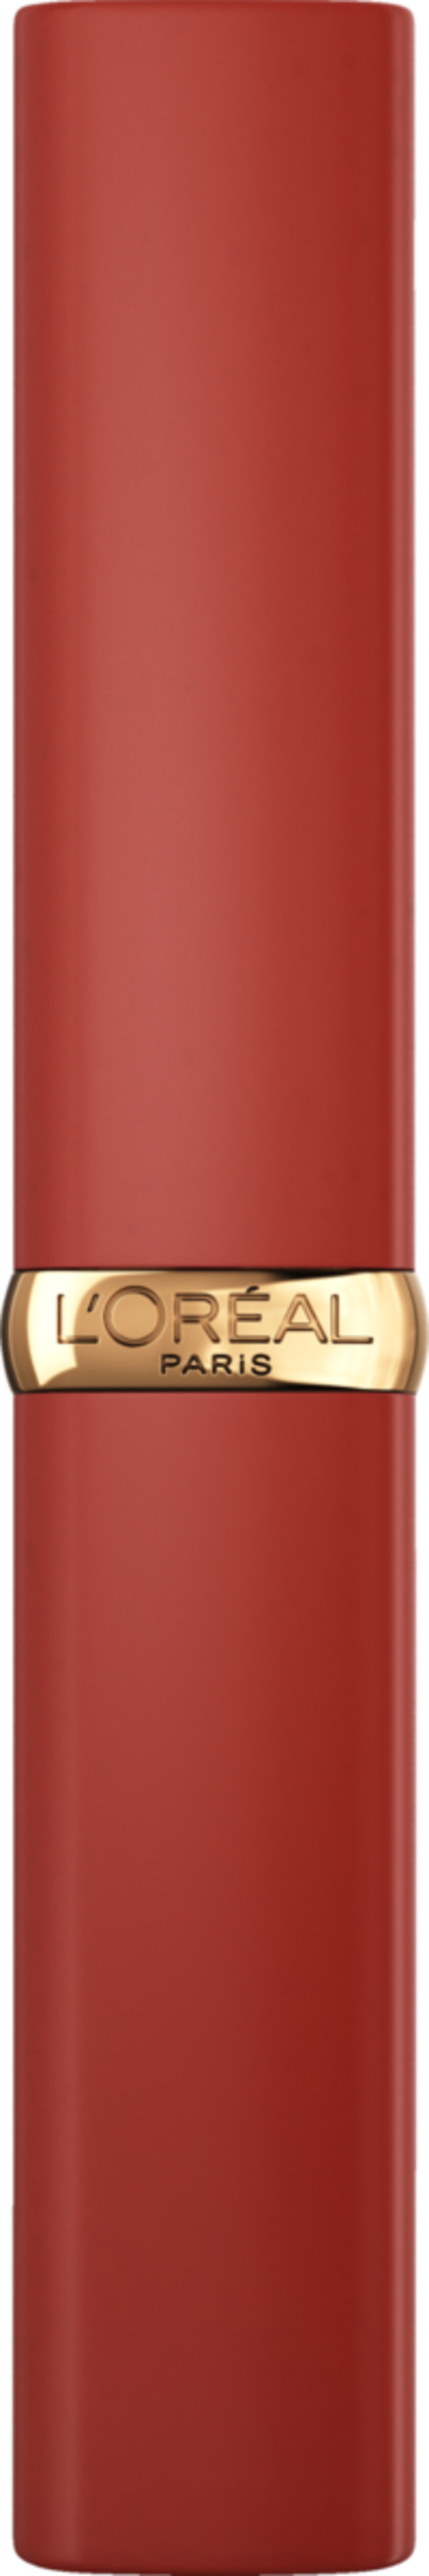 Bild 1 von L’Oréal Paris Color Riche Intense Volume Matte 200 L'Orange Stand up